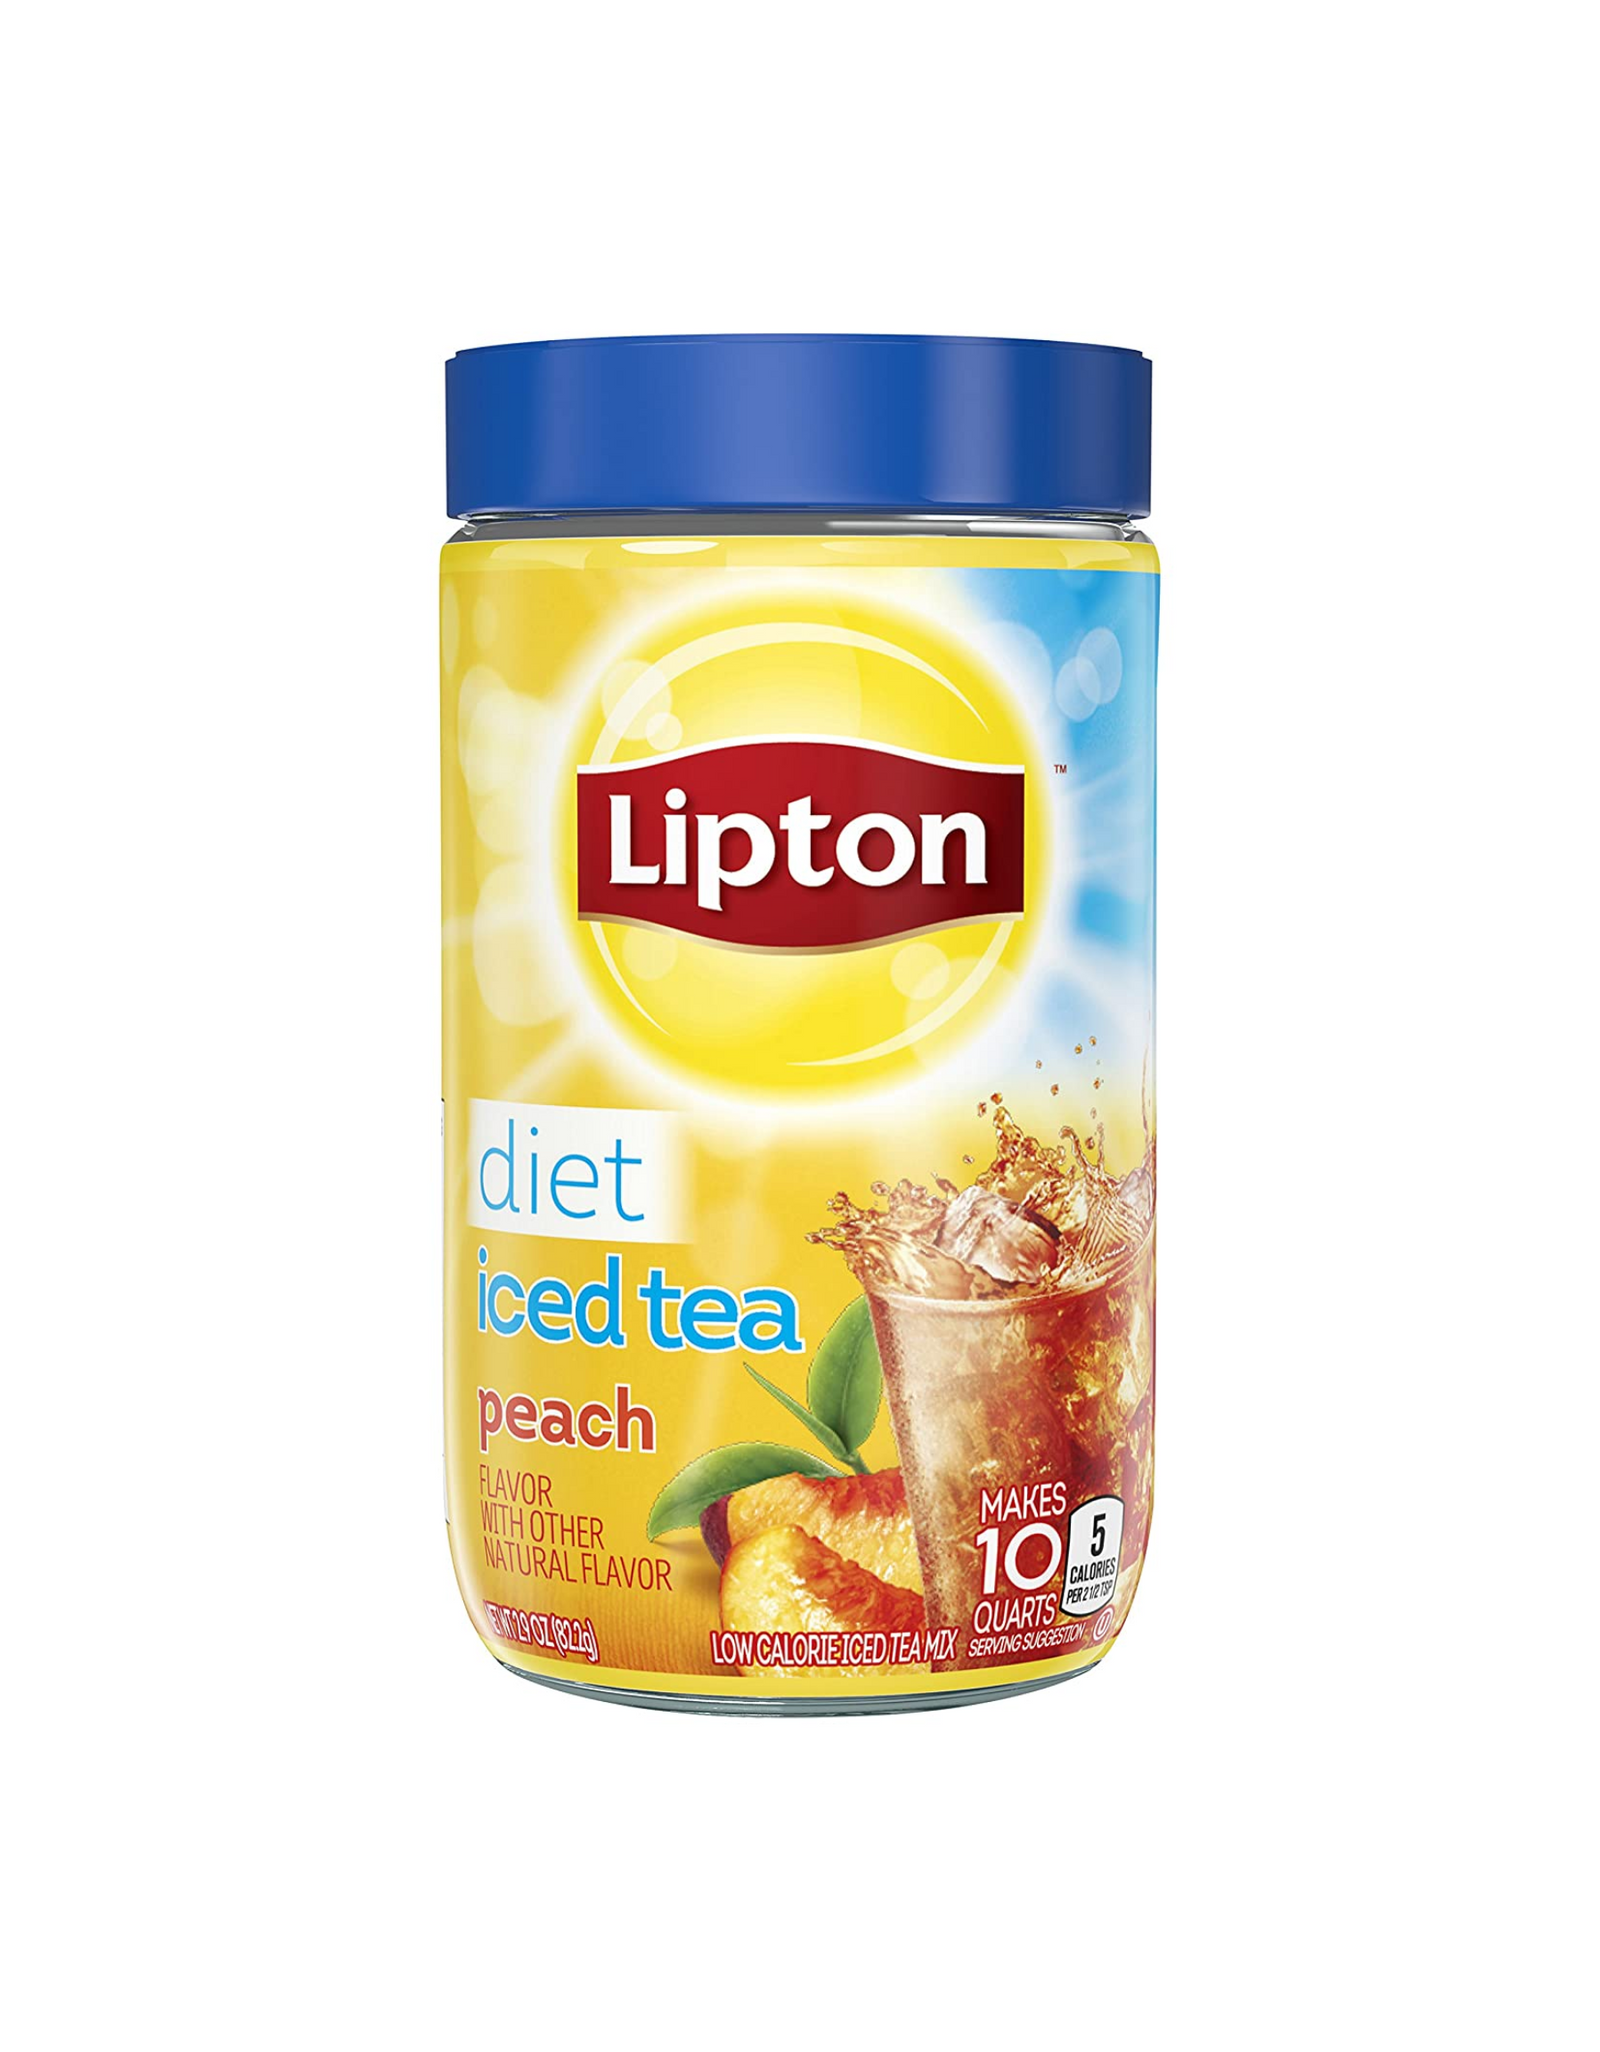 Lipton Iced Tea Mix, Diet Iced Tea Peach Flavor, 10 Quart (Pack of 4)